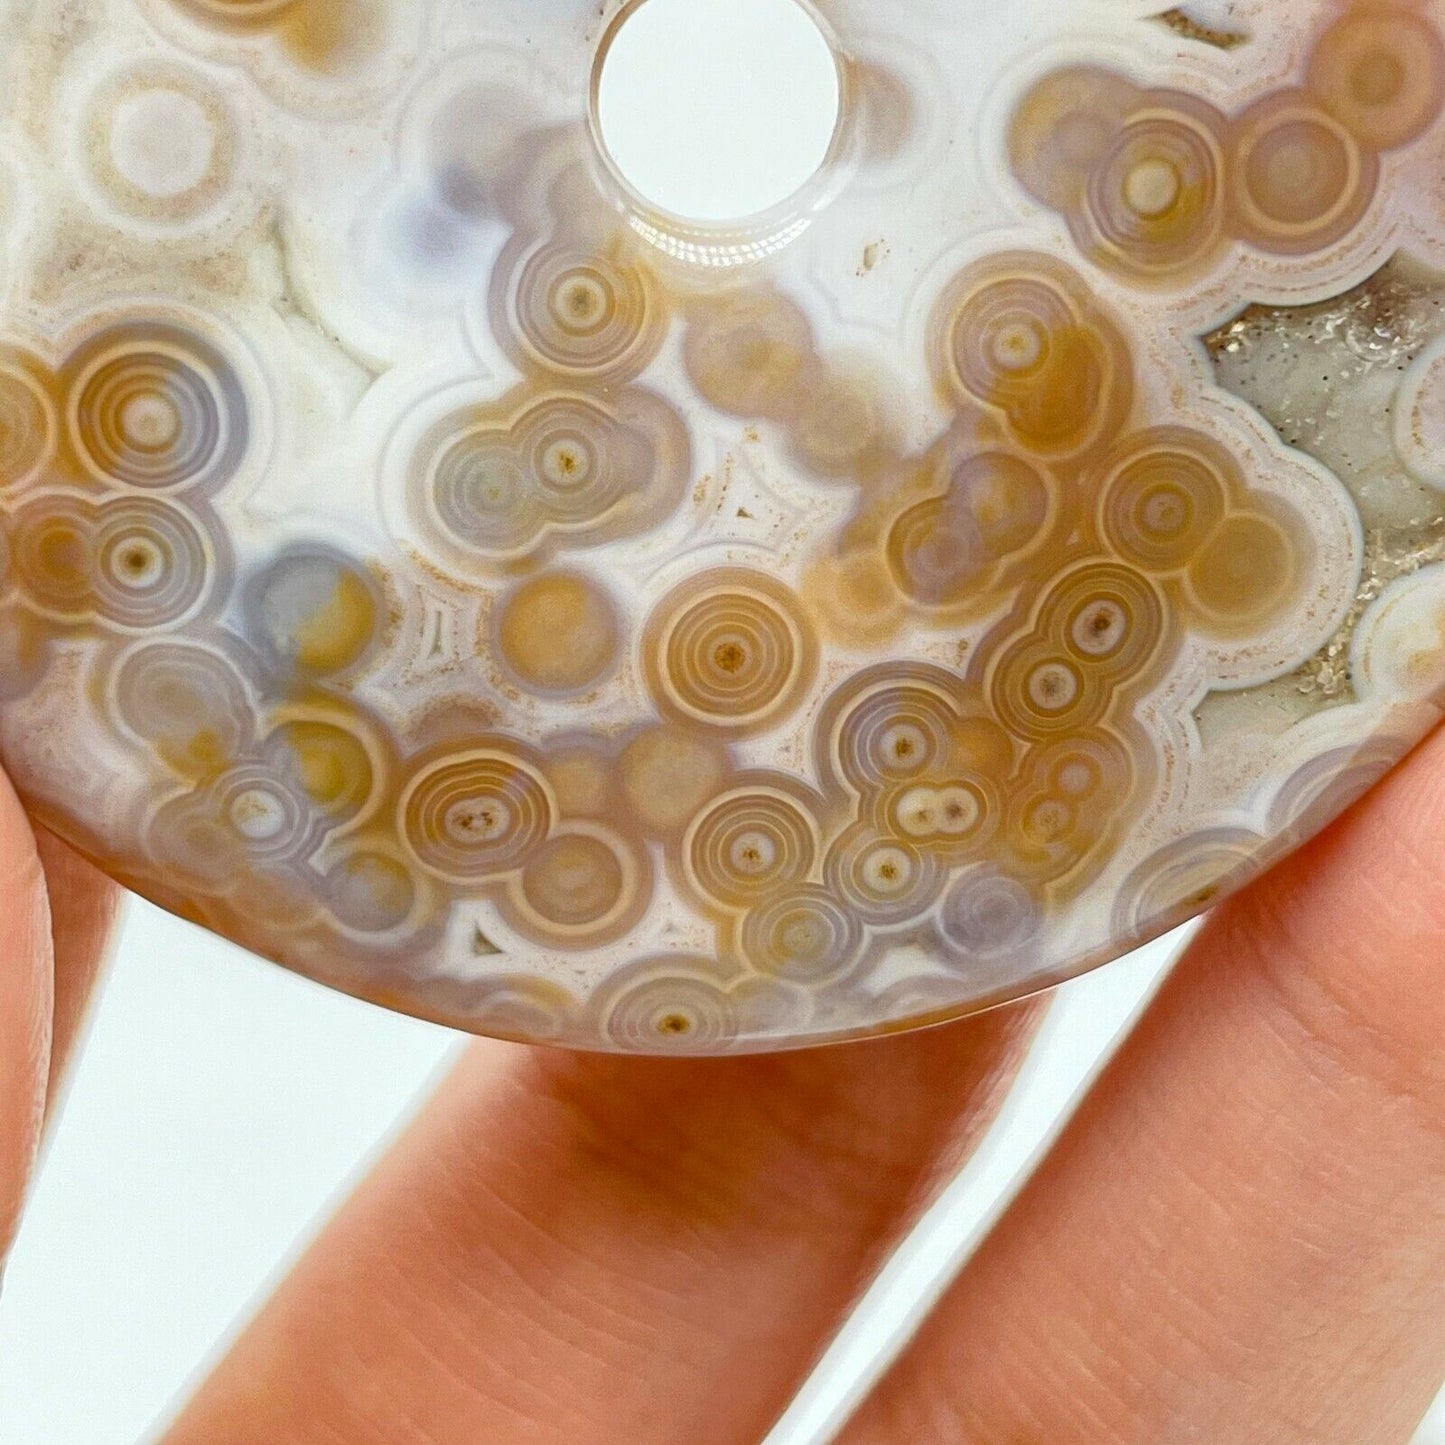 Collection ! Amazing Orbicular Ocean Jasper Agate Reiki Peace buckle Pendant A06